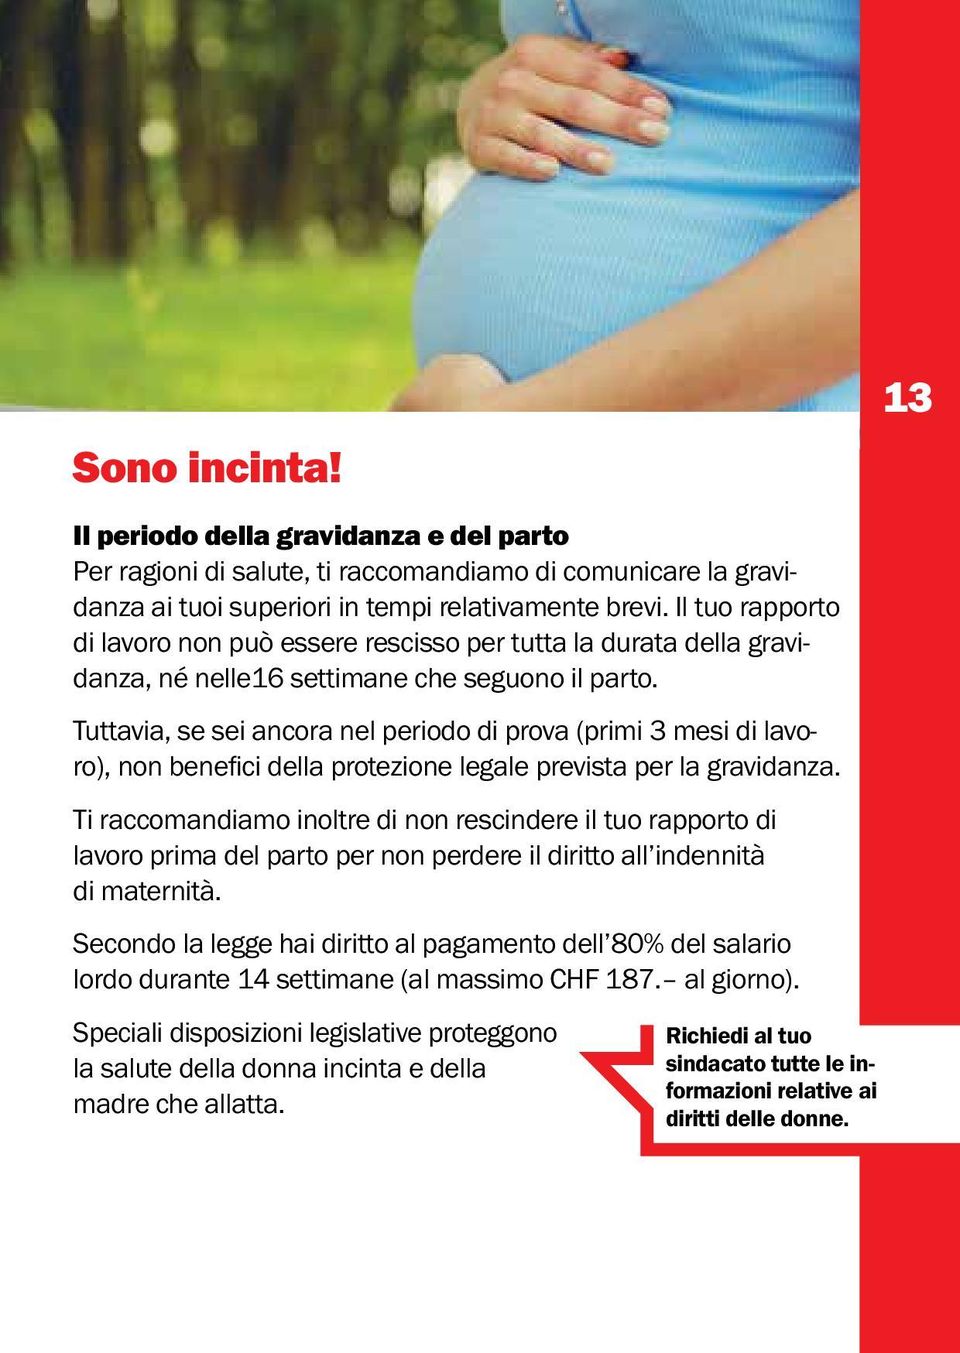 Tuttavia, se sei ancora nel periodo di prova (primi 3 mesi di lavoro), non benefici della protezione legale prevista per la gravidanza.